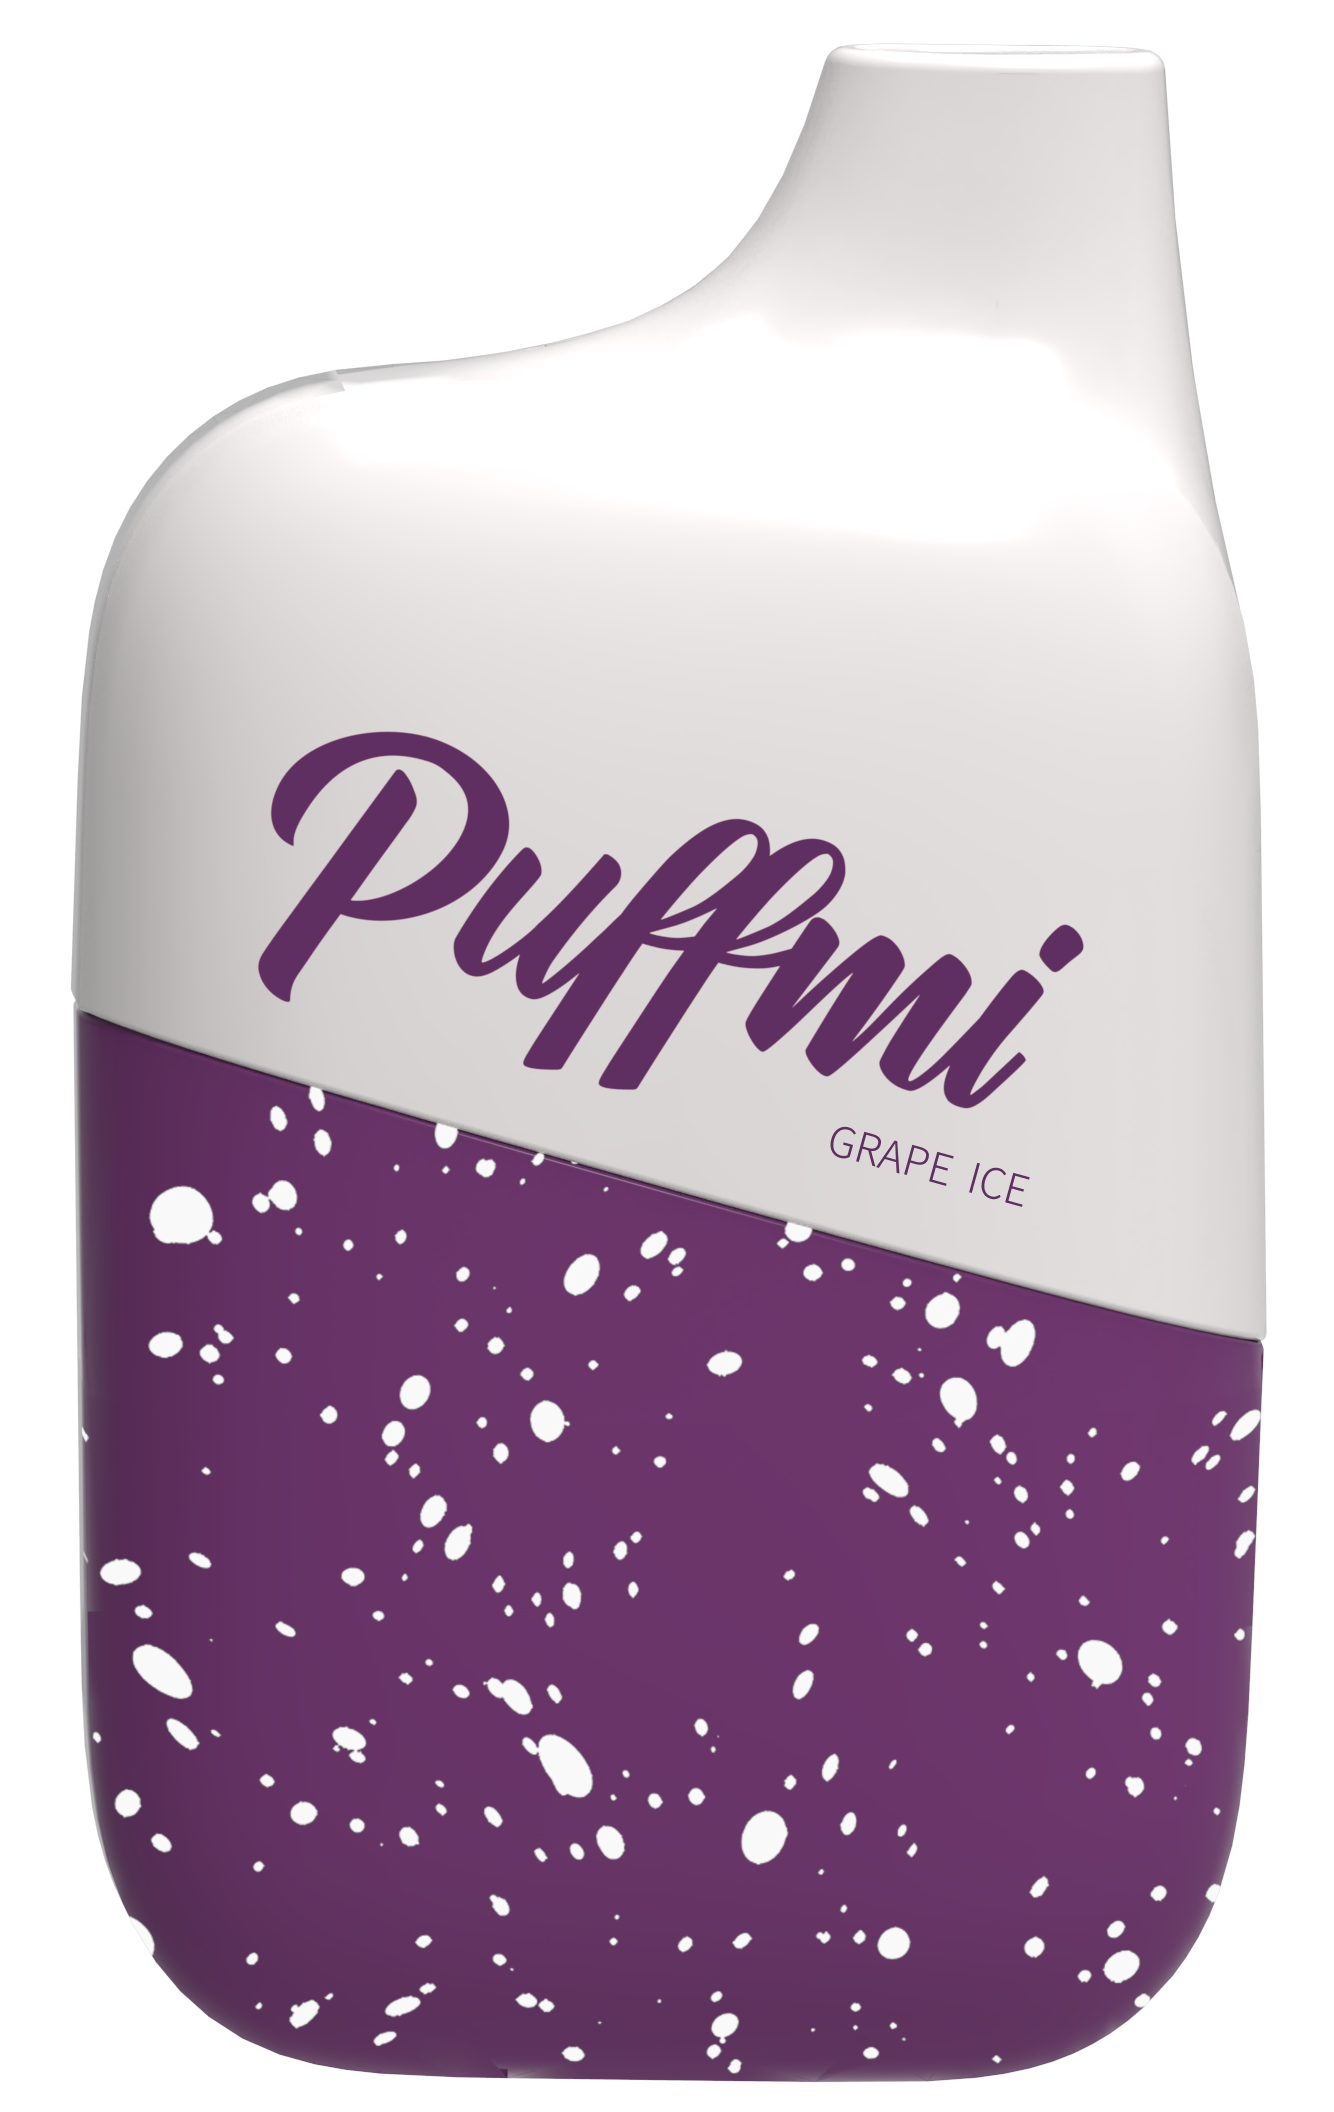 PUFFMI 4500 / Grape Ice